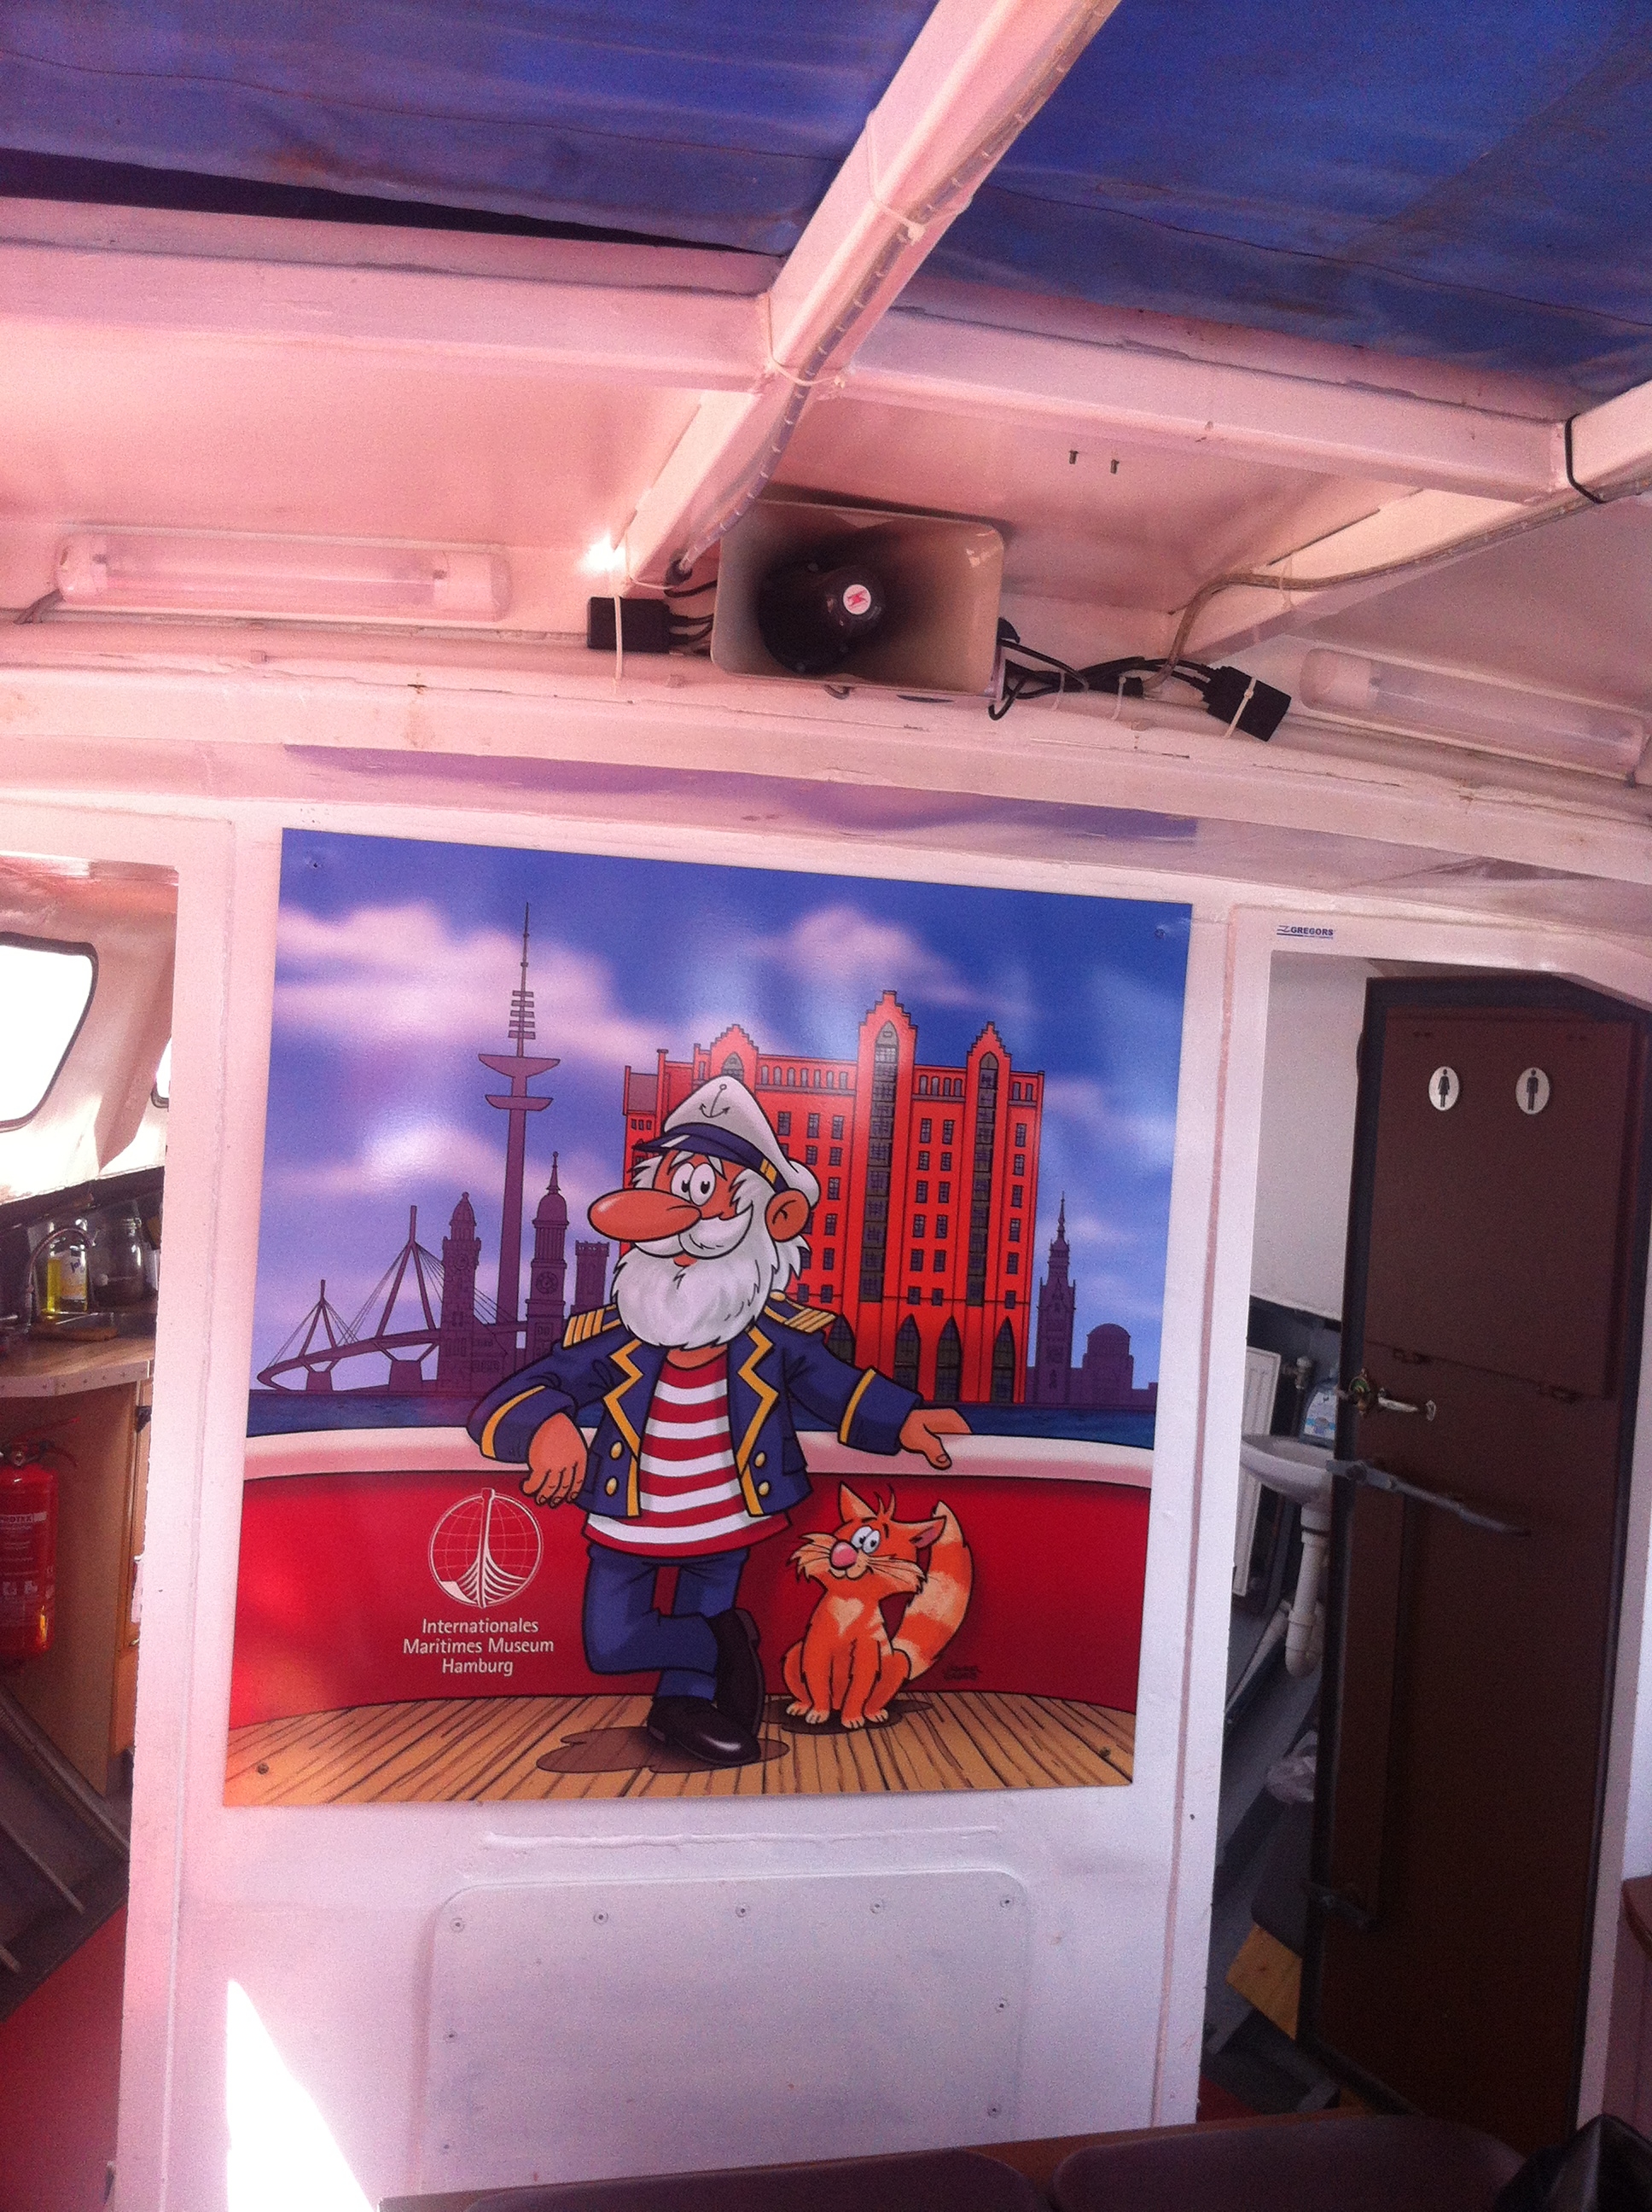 In der Barkasse ein alter Seebär - Reklame für das internationale maritime Museum Hamburg